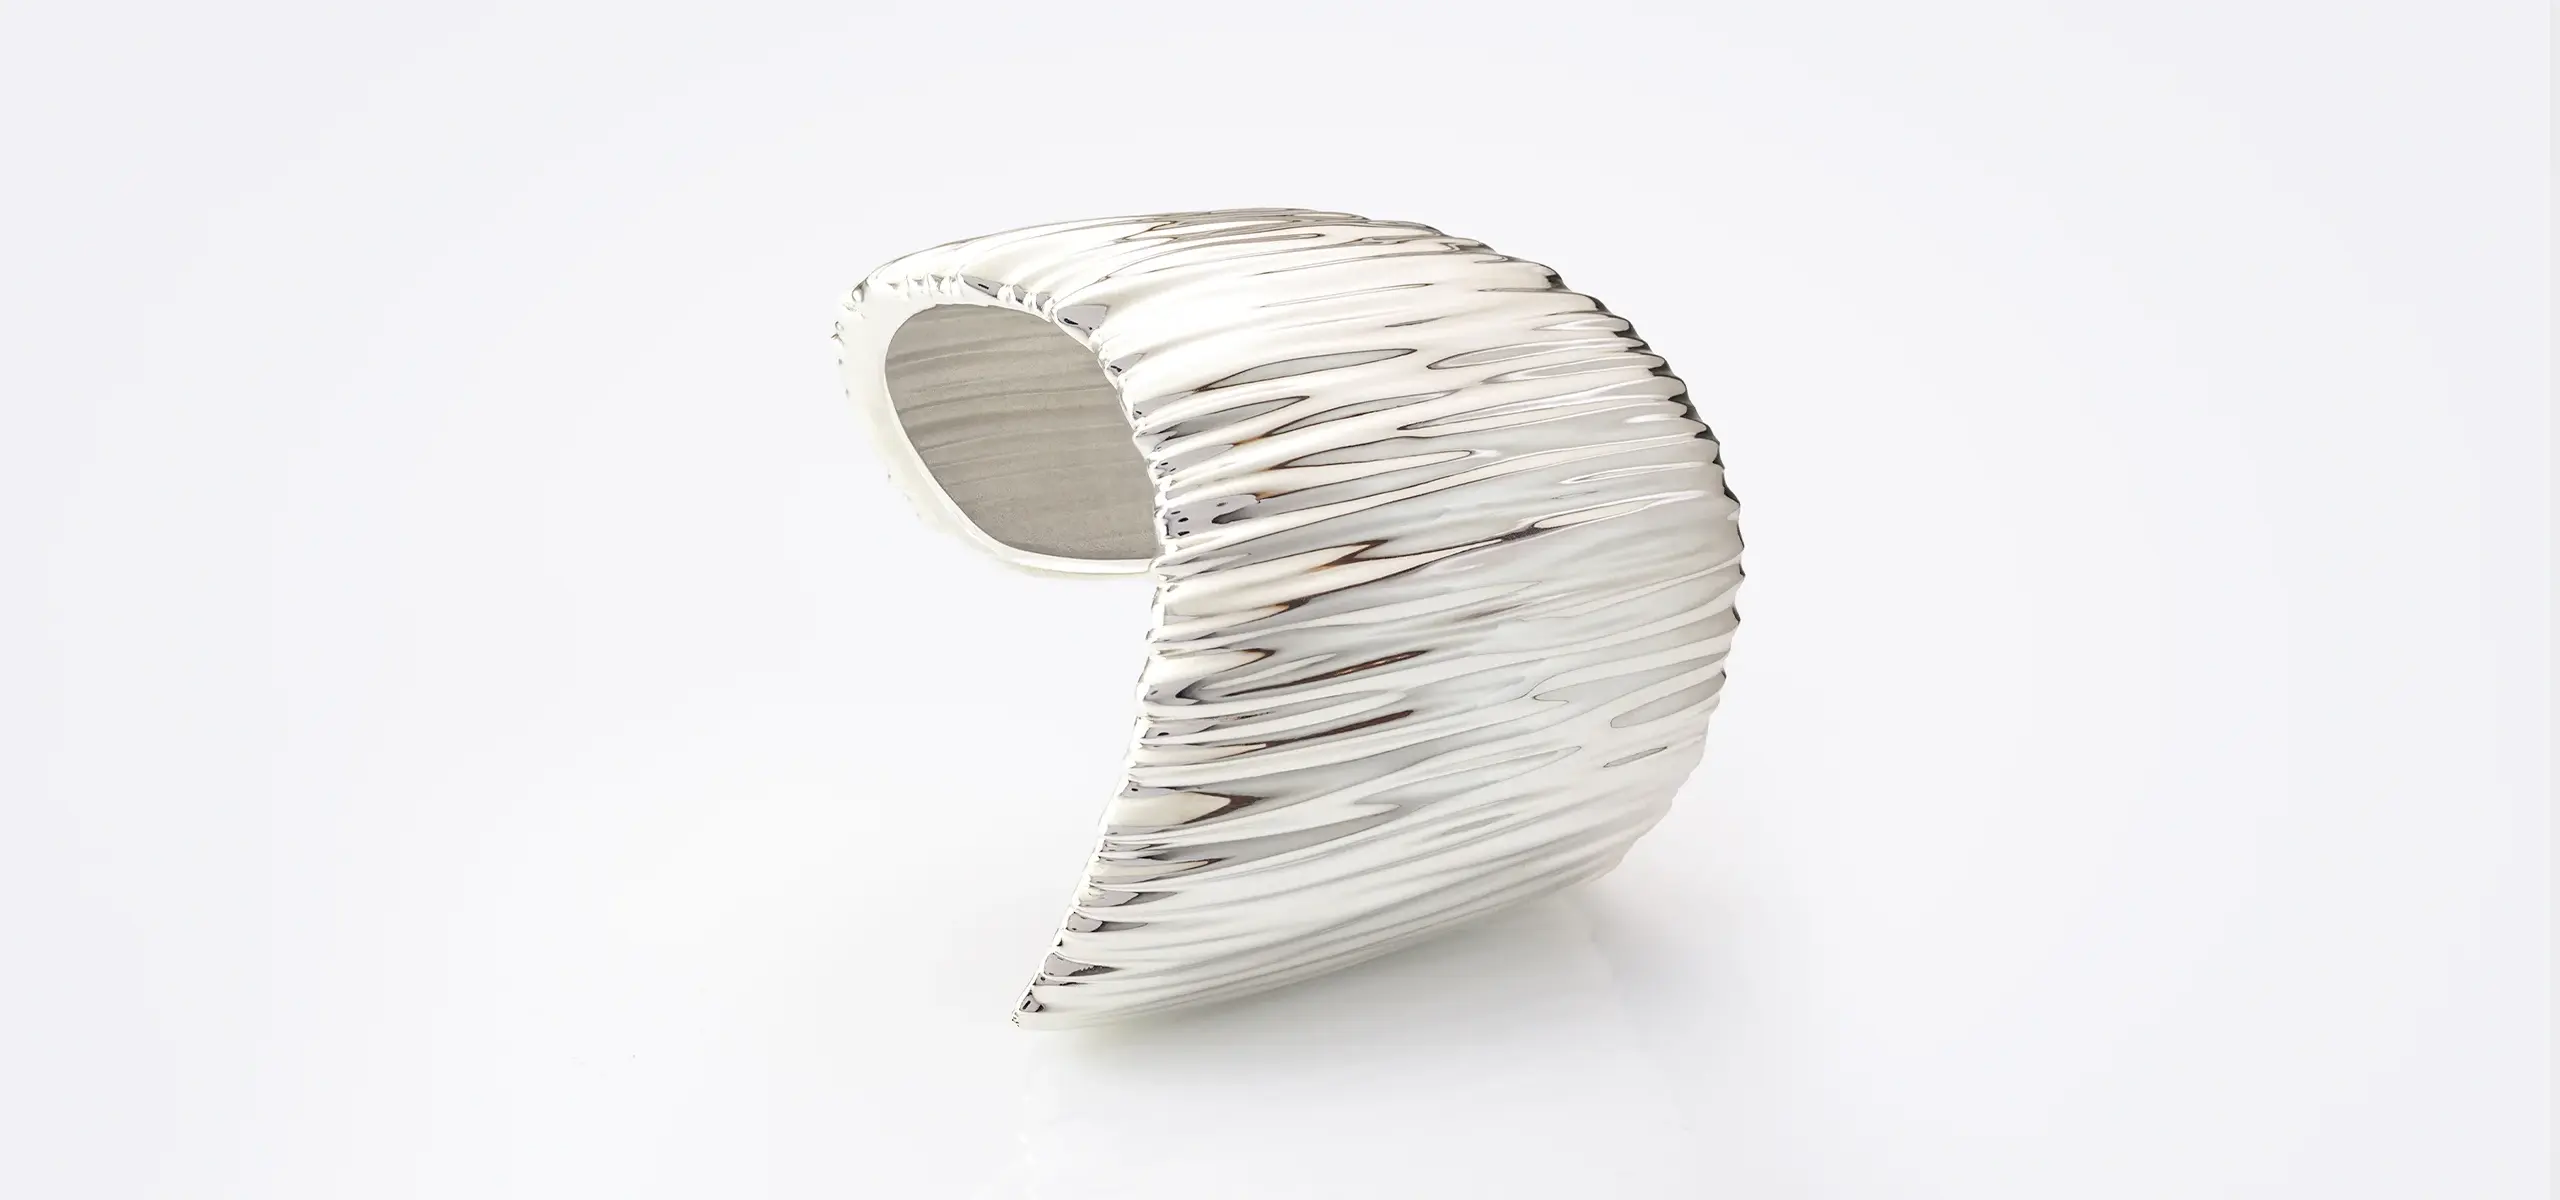 Generative-design-jewelry-bracelete-by-Groen-Boothman